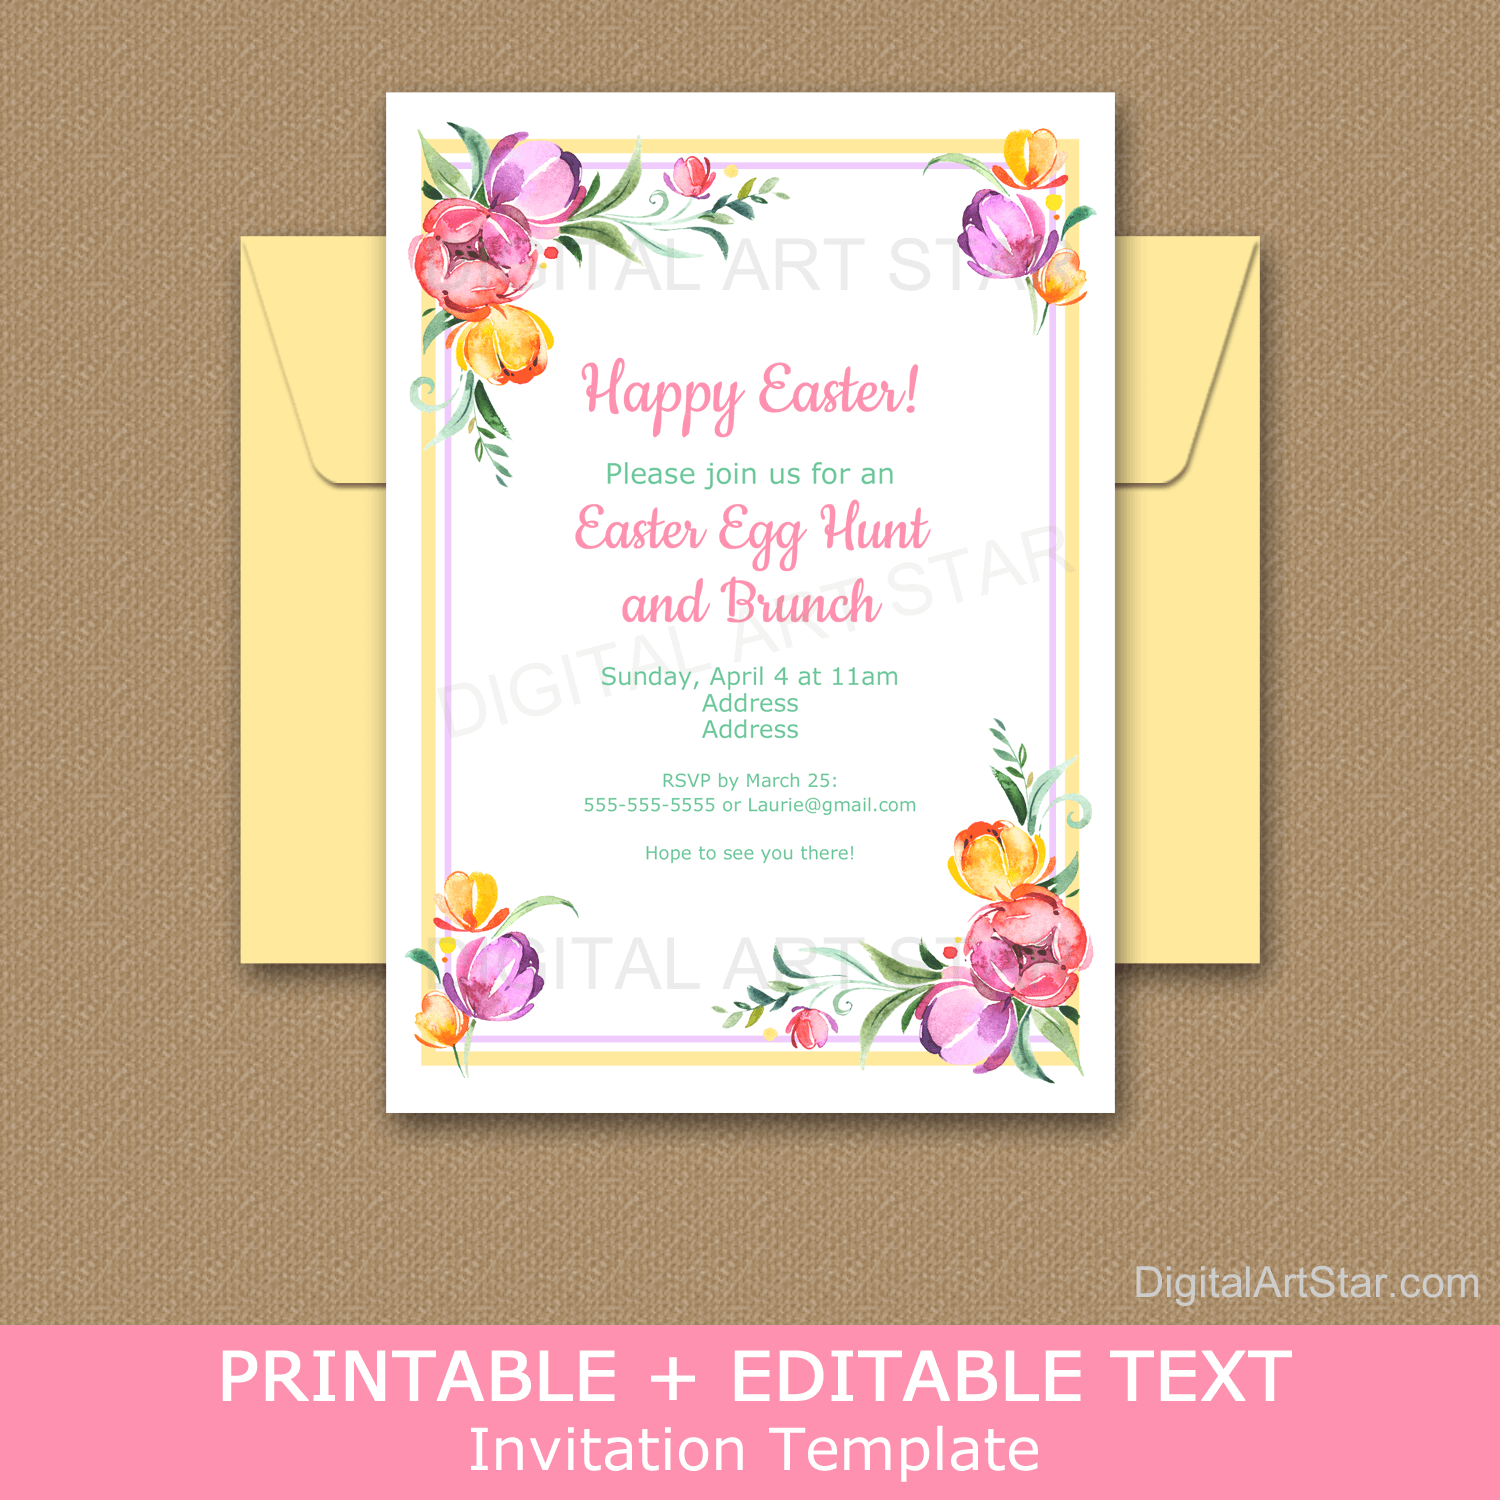 Floral Easter Invitation Template Download for Easter Egg Hunt and Easter Brunch